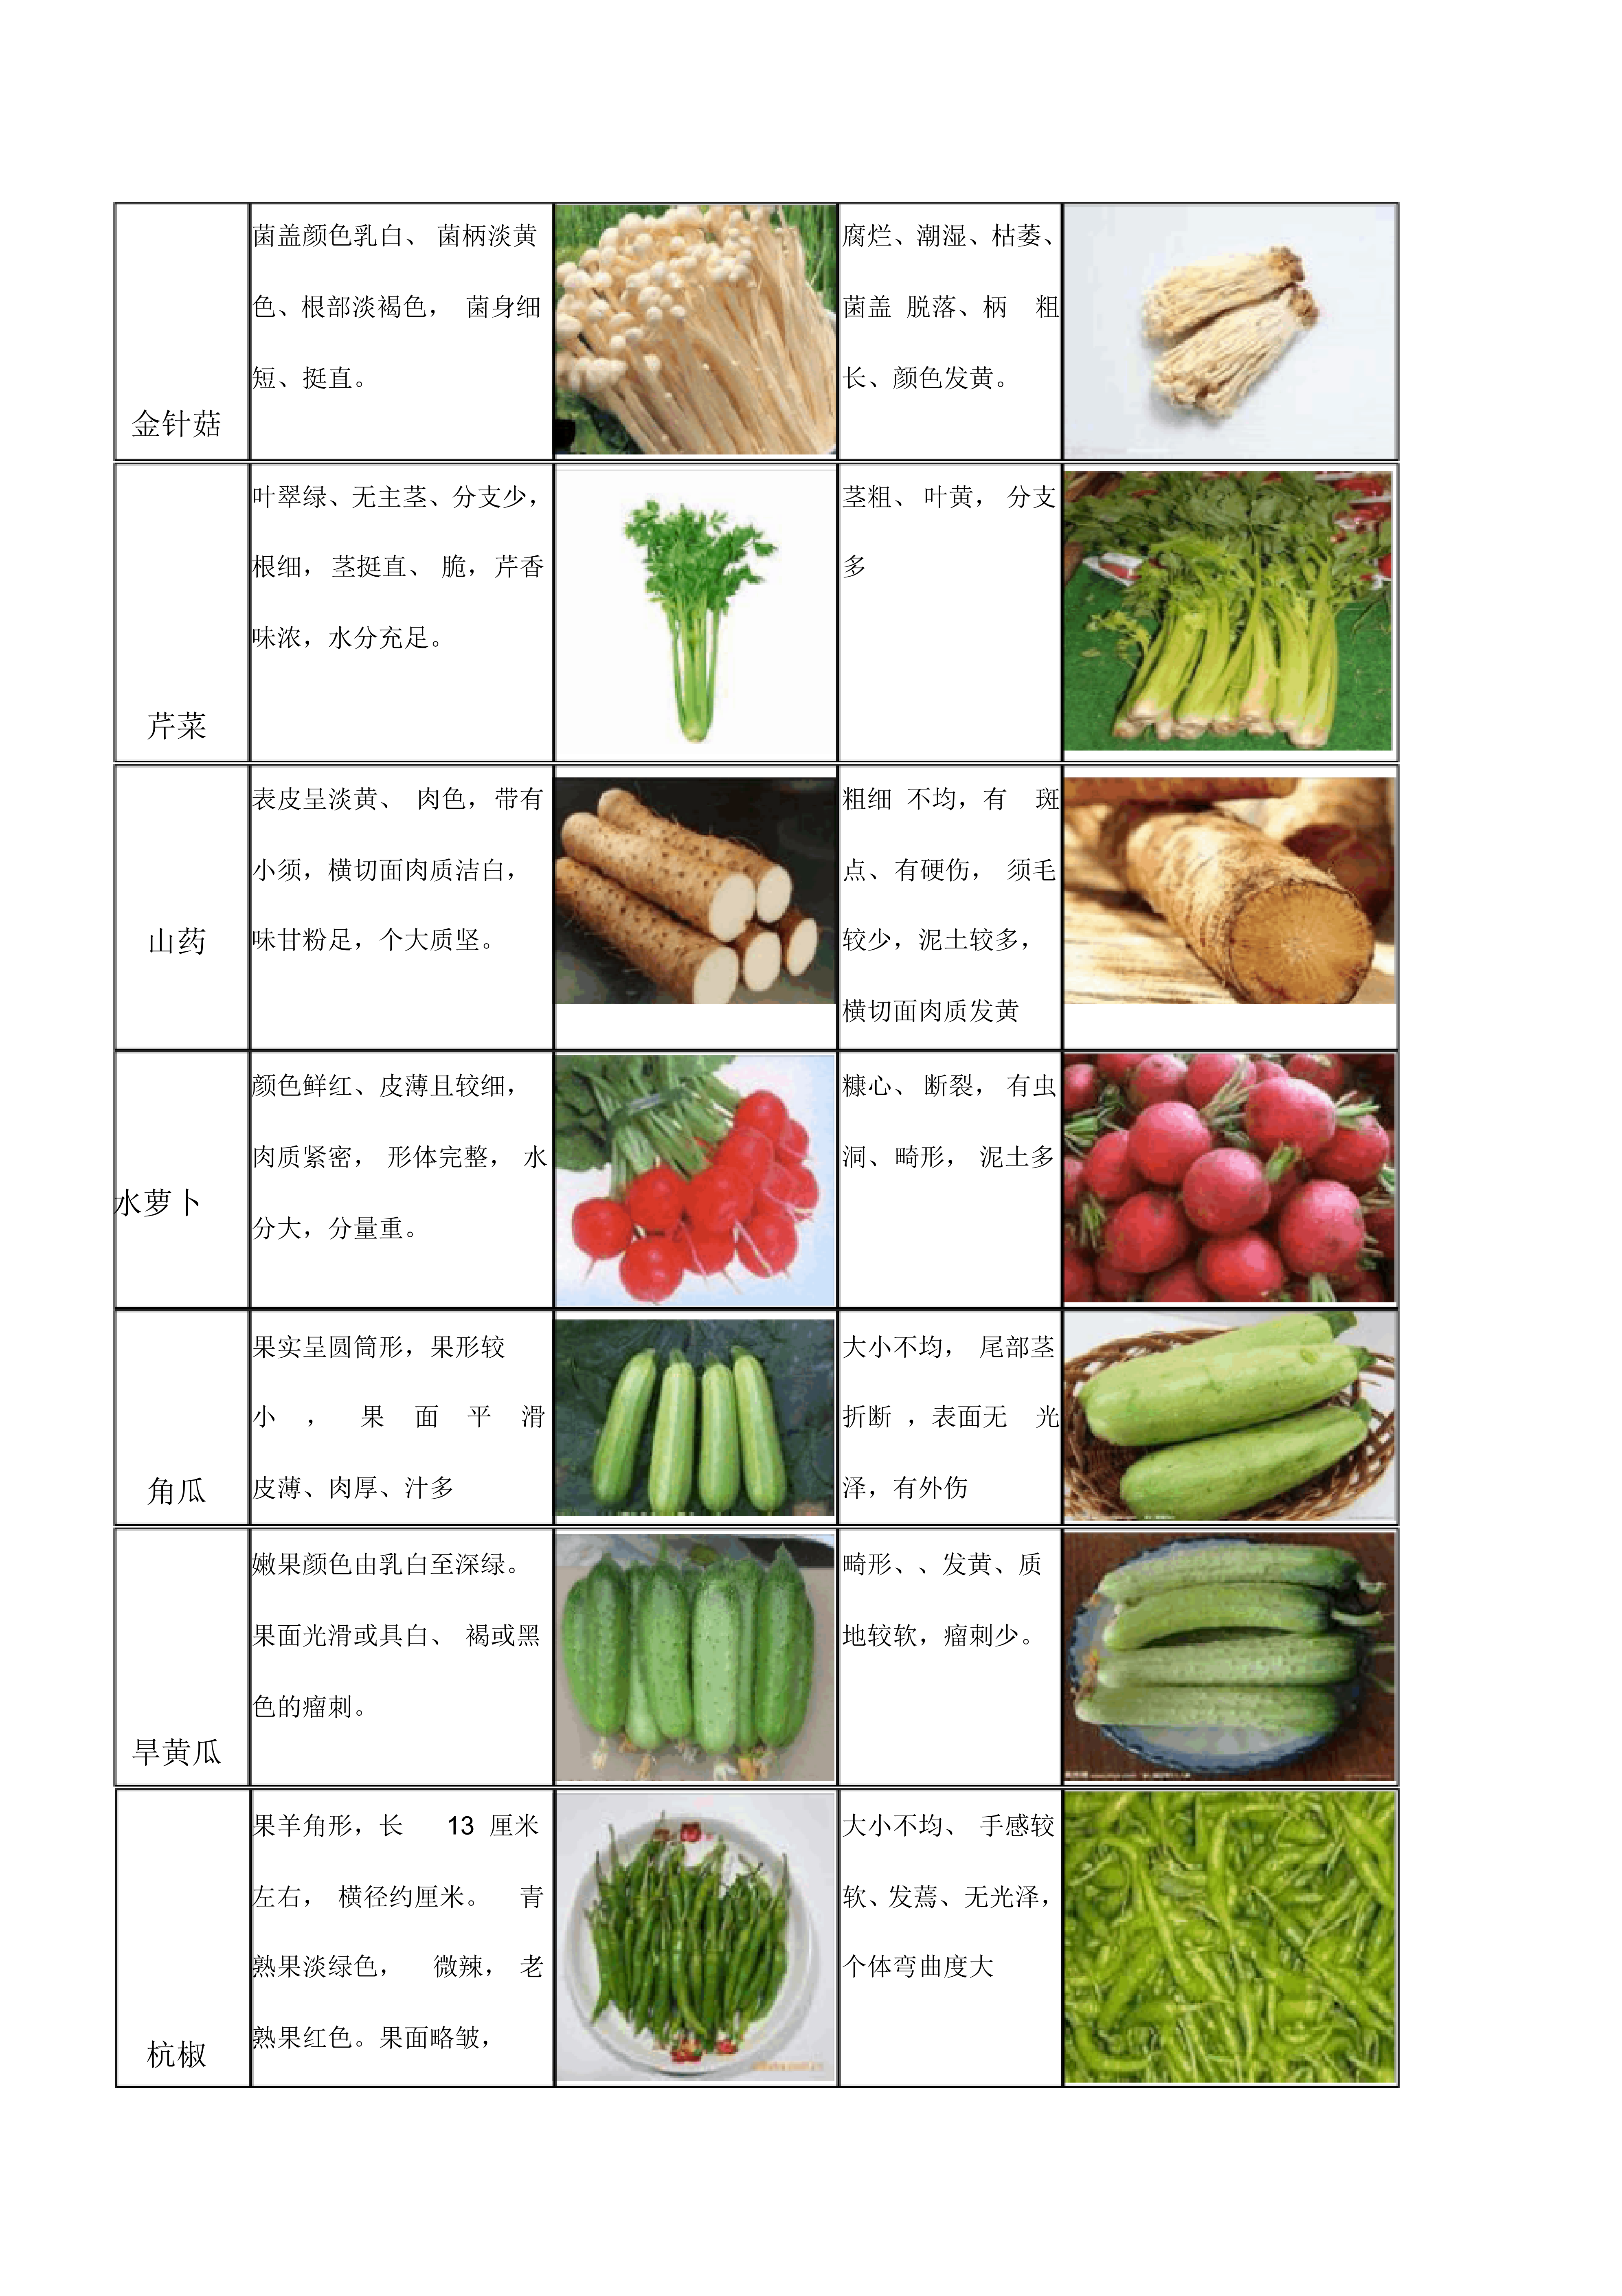 酒店蔬菜收货标准图片图片